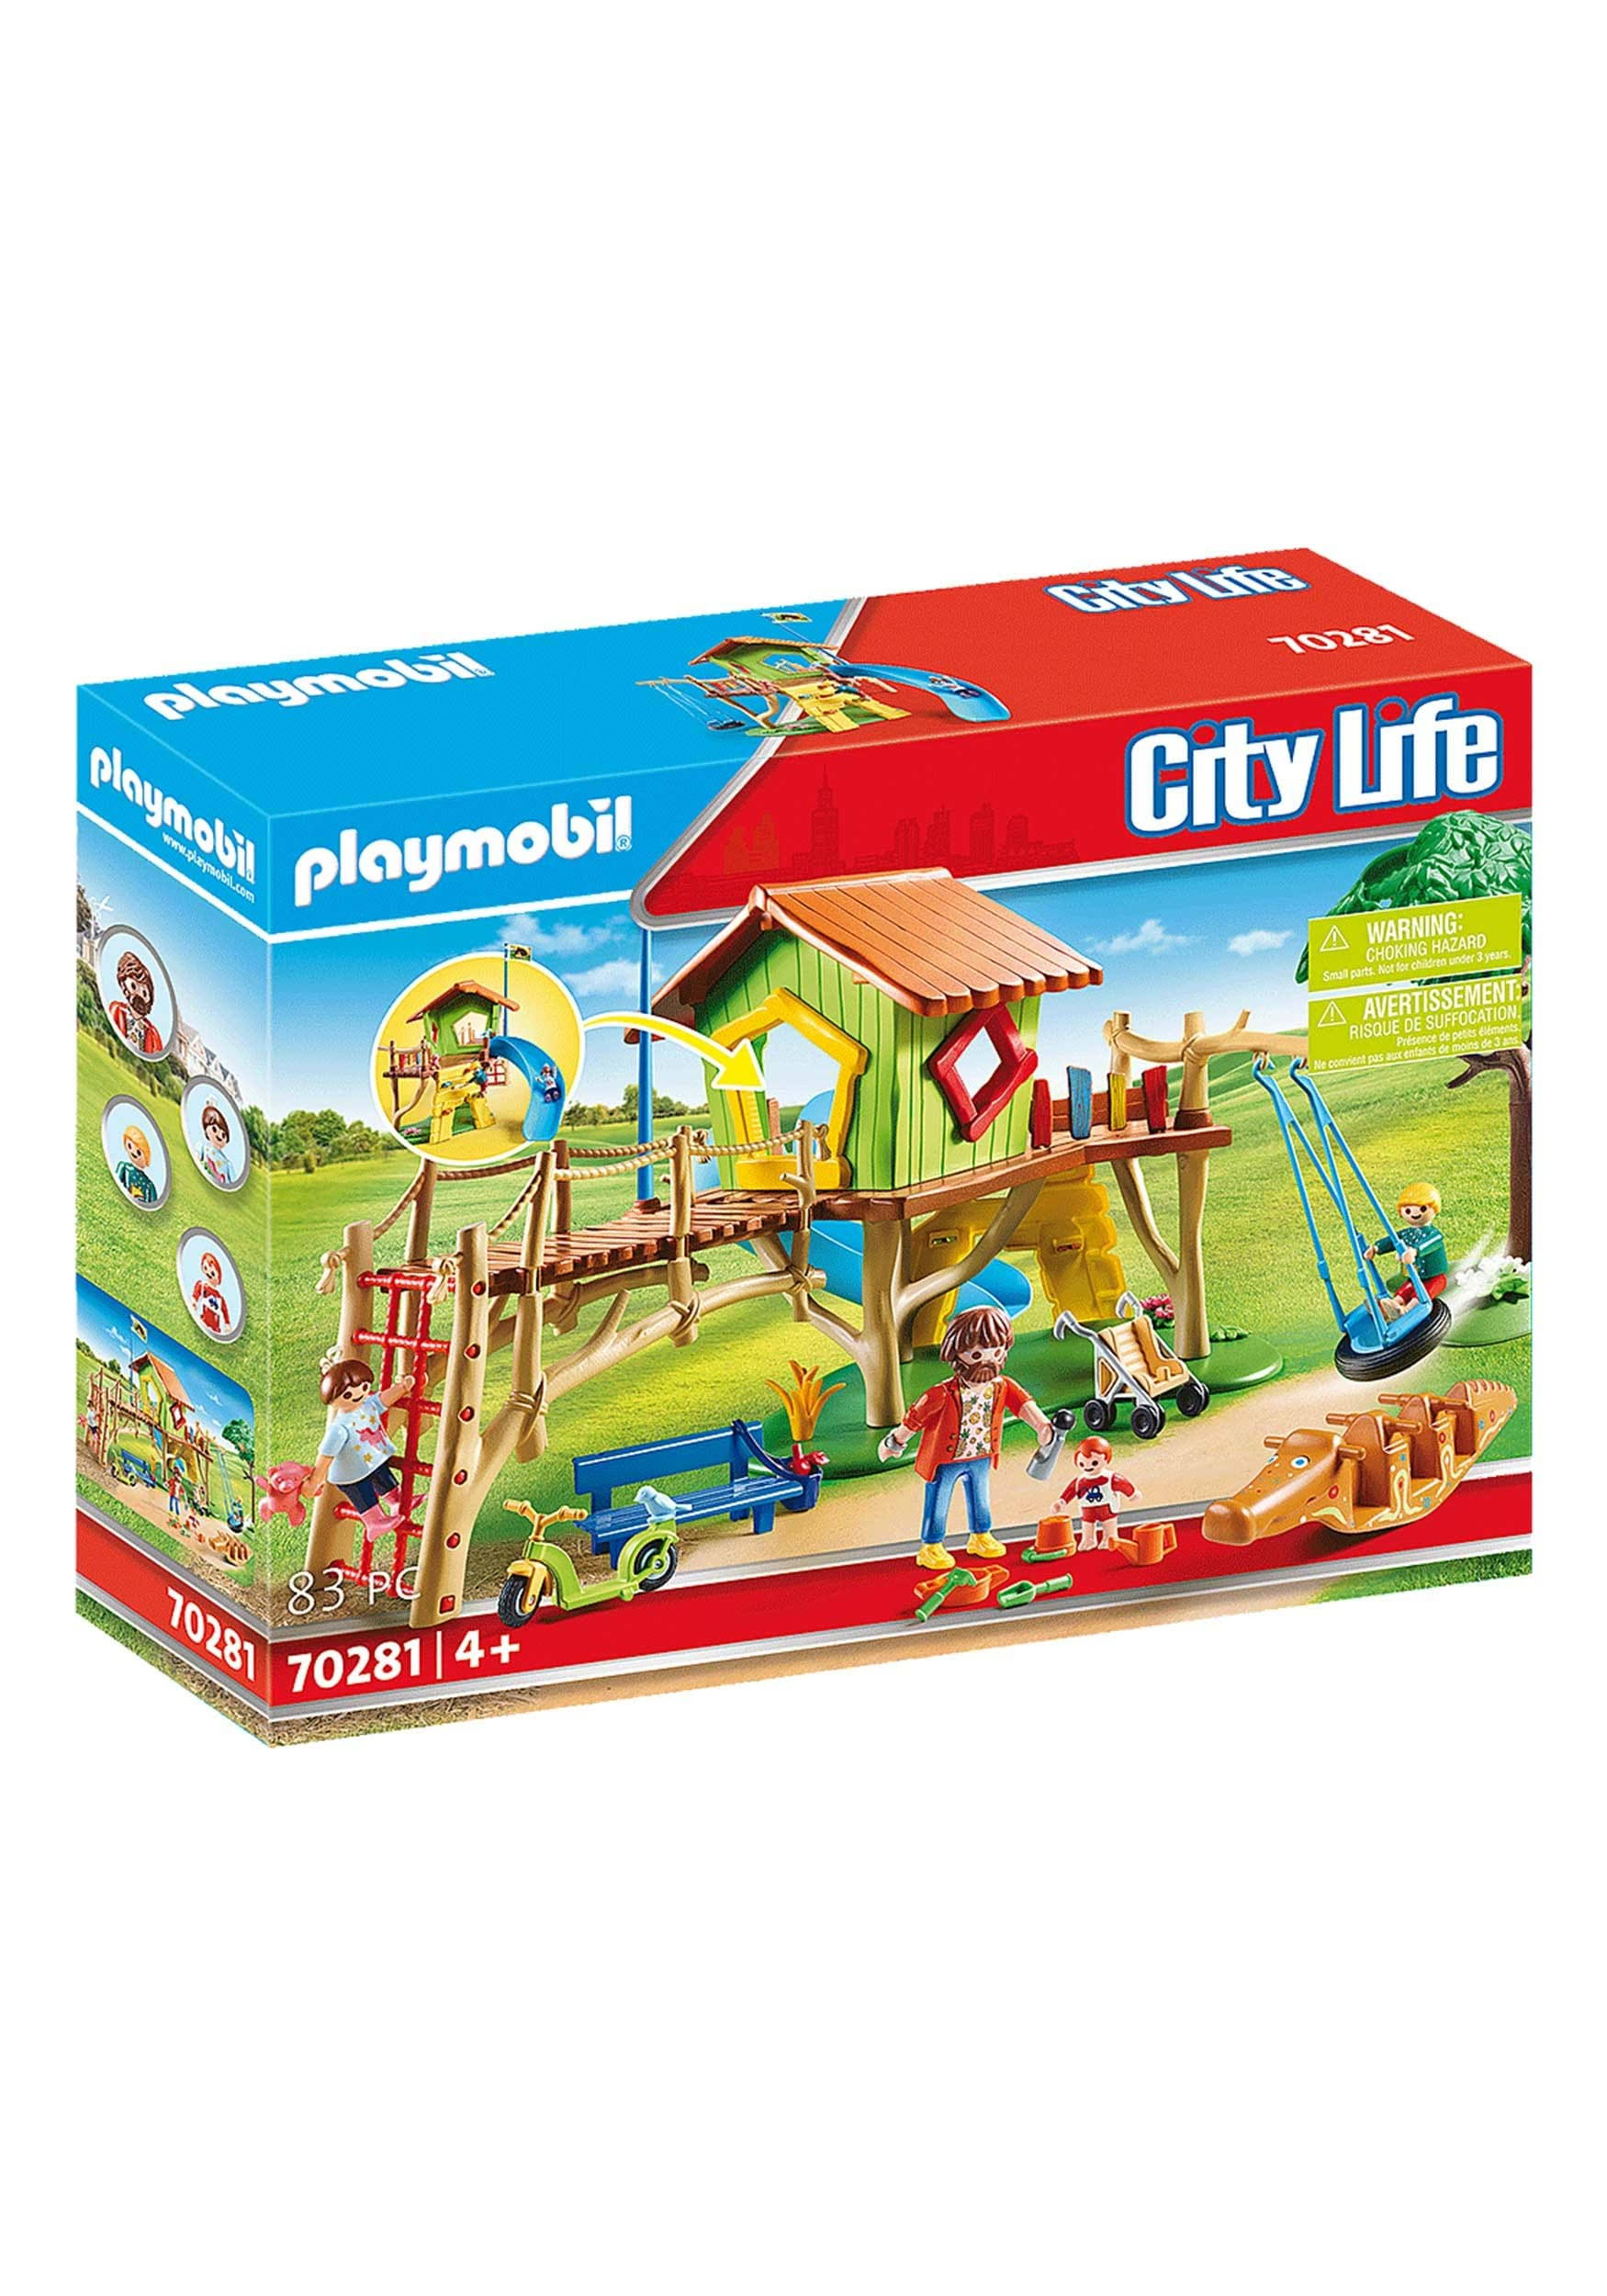 Playmobil City Life Adventure Playground 70281